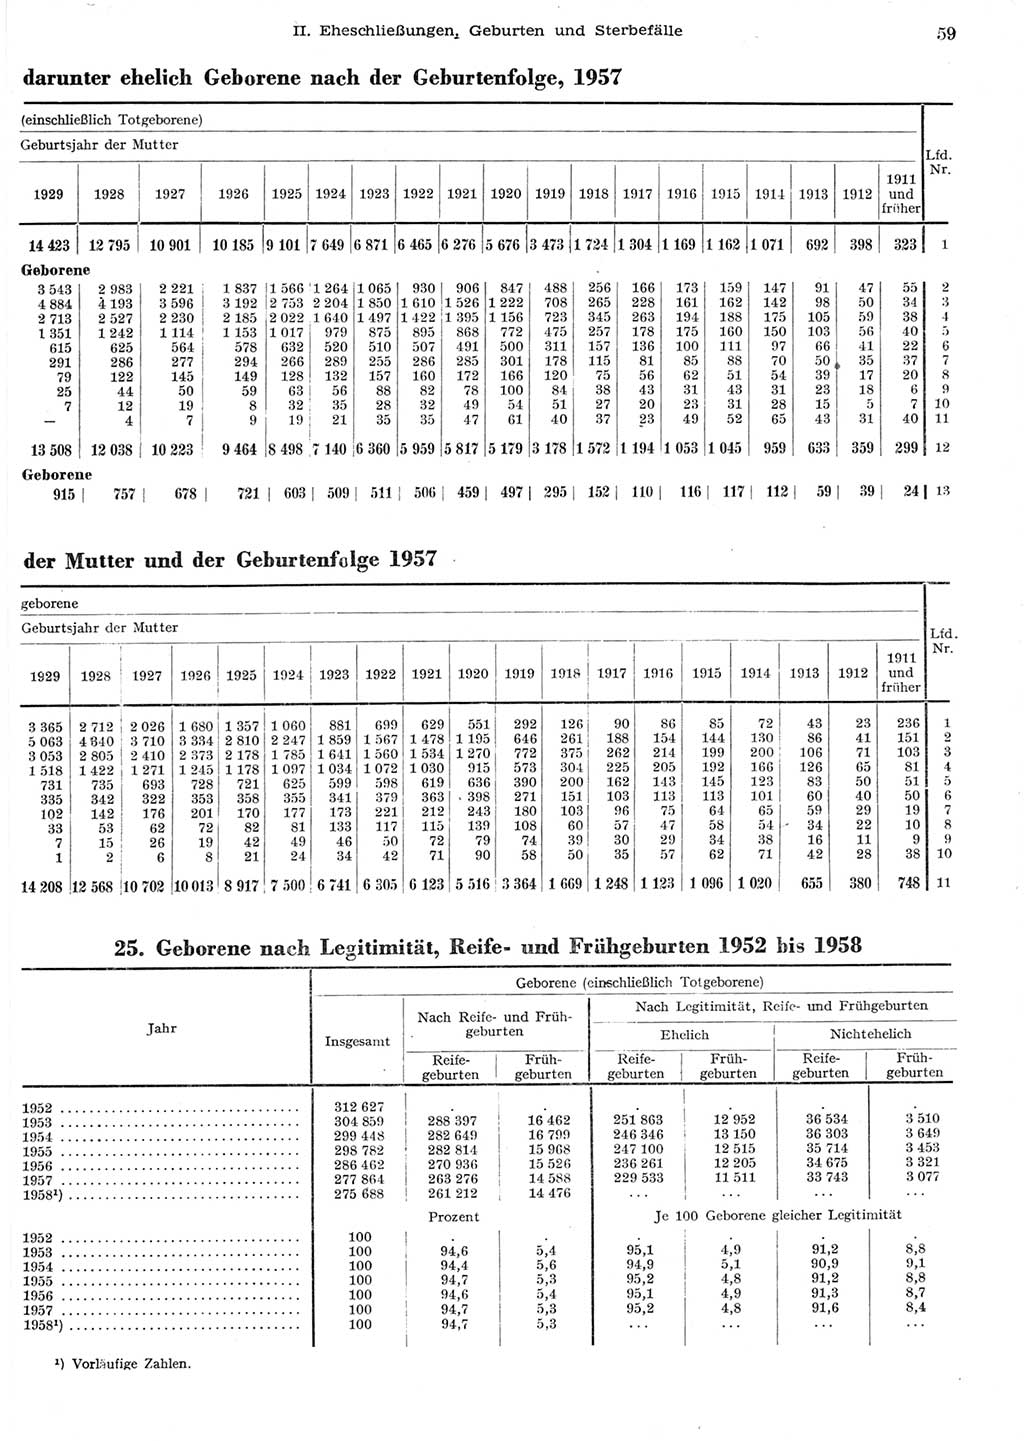 Statistisches Jahrbuch der Deutschen Demokratischen Republik (DDR) 1958, Seite 59 (Stat. Jb. DDR 1958, S. 59)